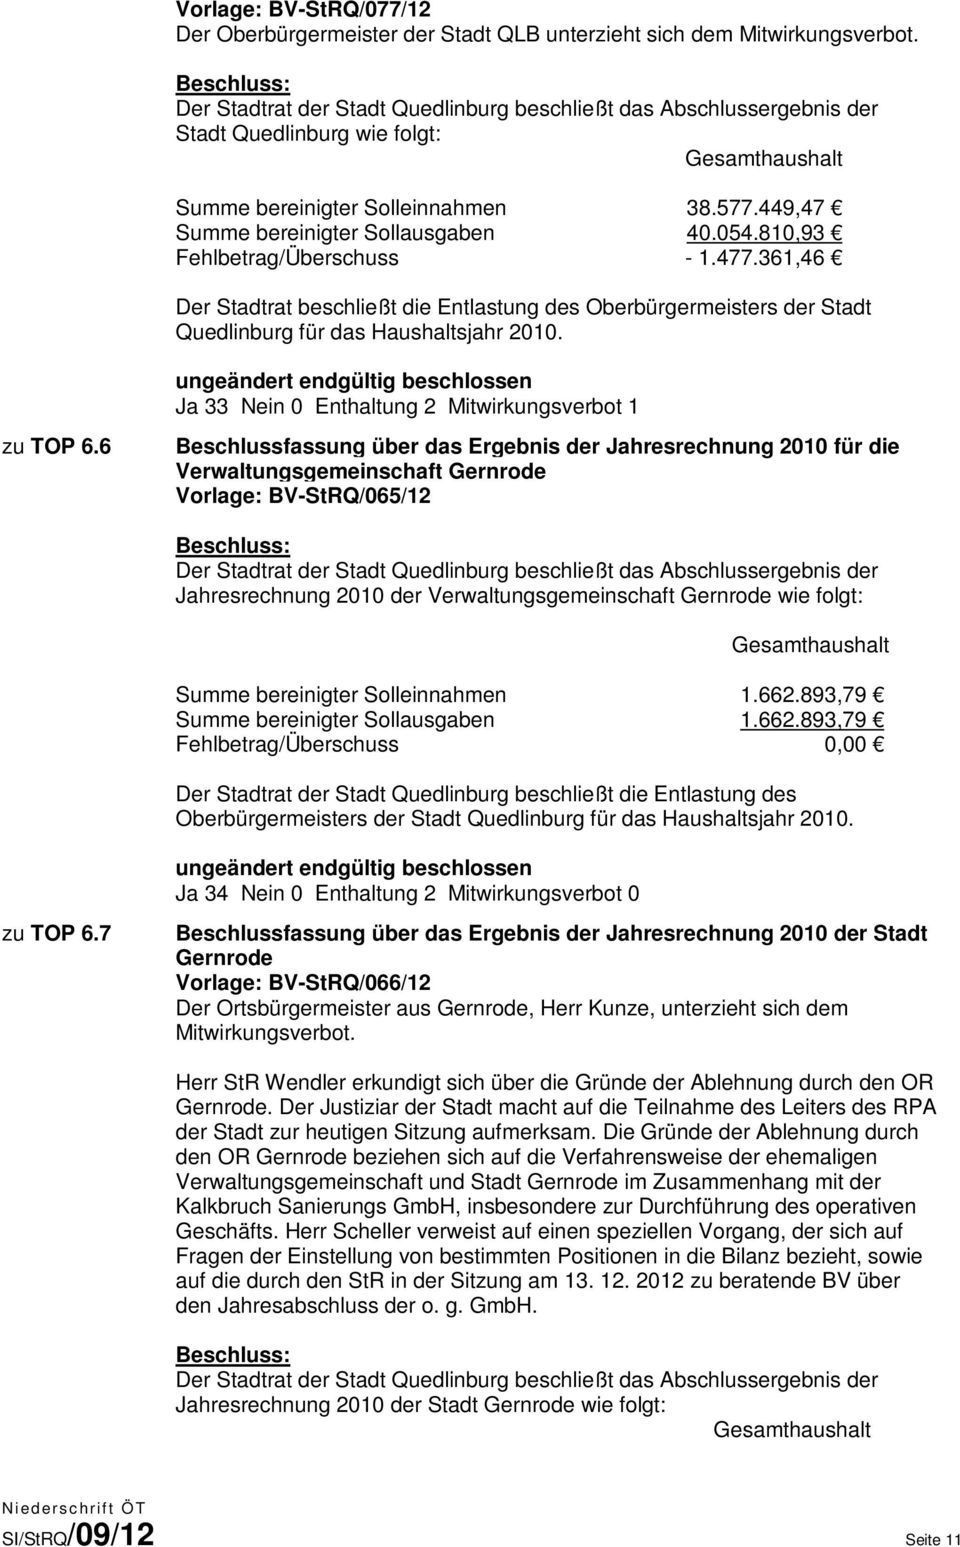 449,47 Summe bereinigter Sollausgaben 40.054.810,93 Fehlbetrag/Überschuss - 1.477.361,46 Der Stadtrat beschließt die Entlastung des Oberbürgermeisters der Stadt Quedlinburg für das Haushaltsjahr 2010.